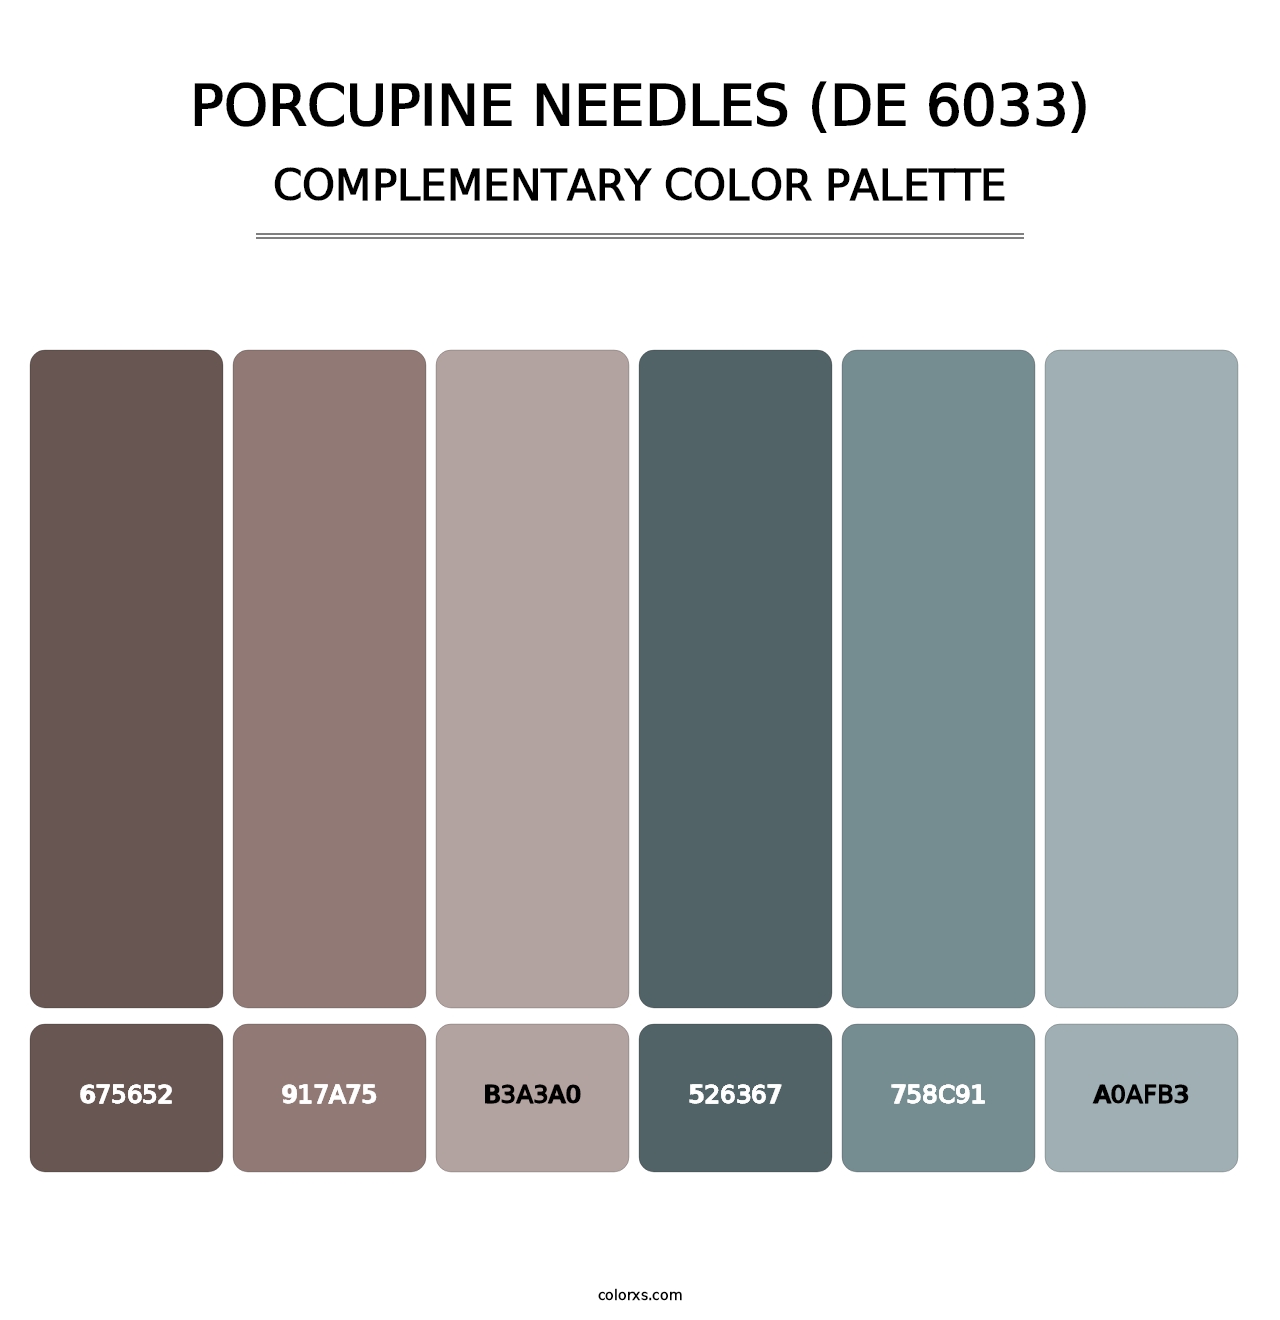 Porcupine Needles (DE 6033) - Complementary Color Palette